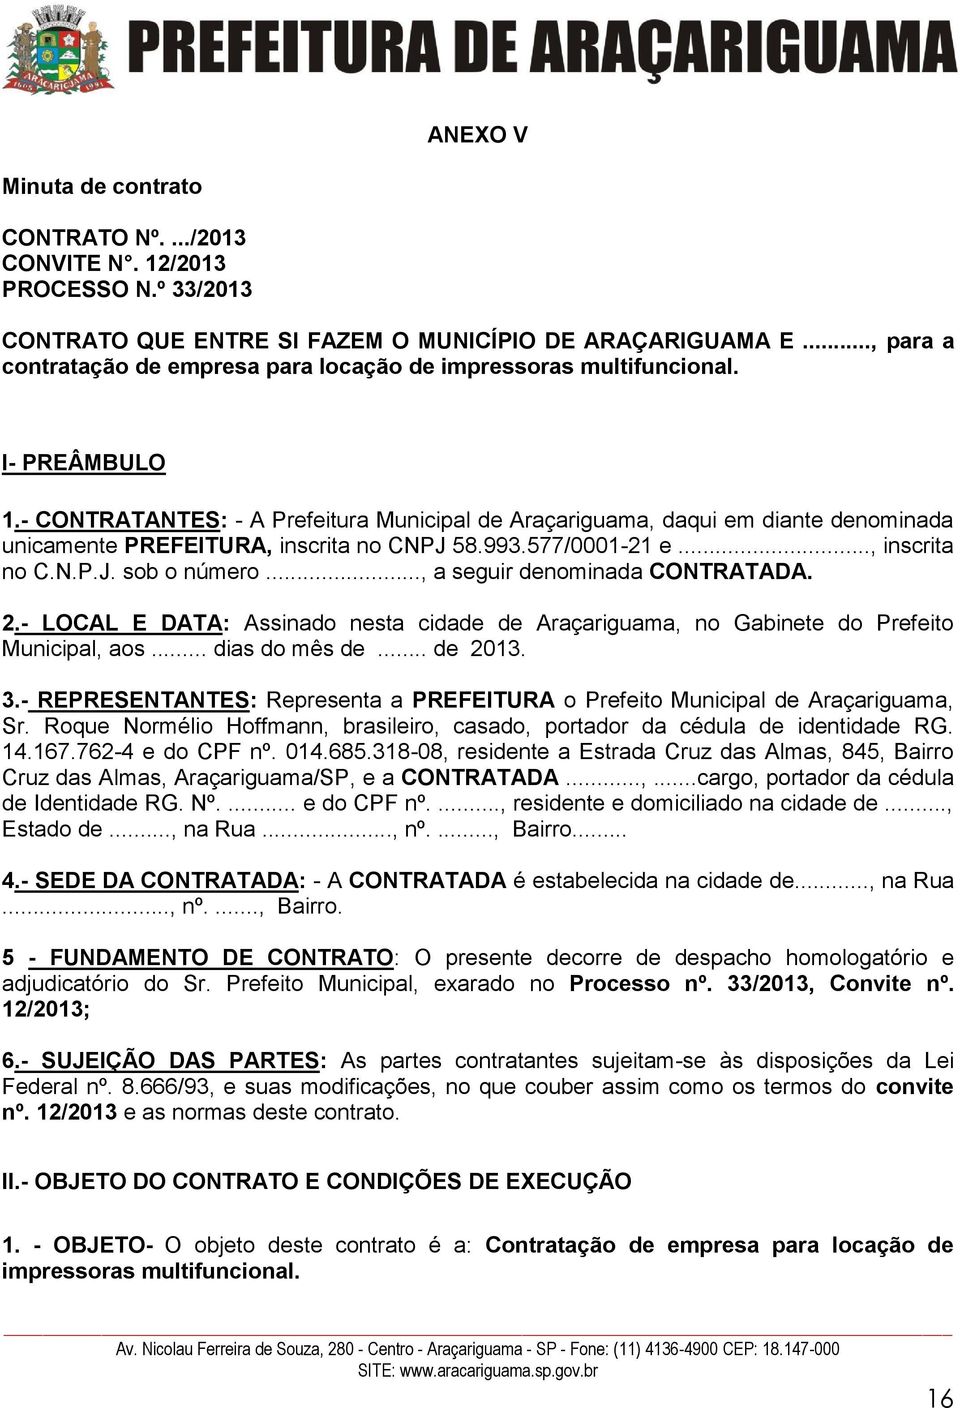 - CONTRATANTES: - A Prefeitura Municipal de Araçariguama, daqui em diante denominada unicamente PREFEITURA, inscrita no CNPJ 58.993.577/0001-21 e..., inscrita no C.N.P.J. sob o número.